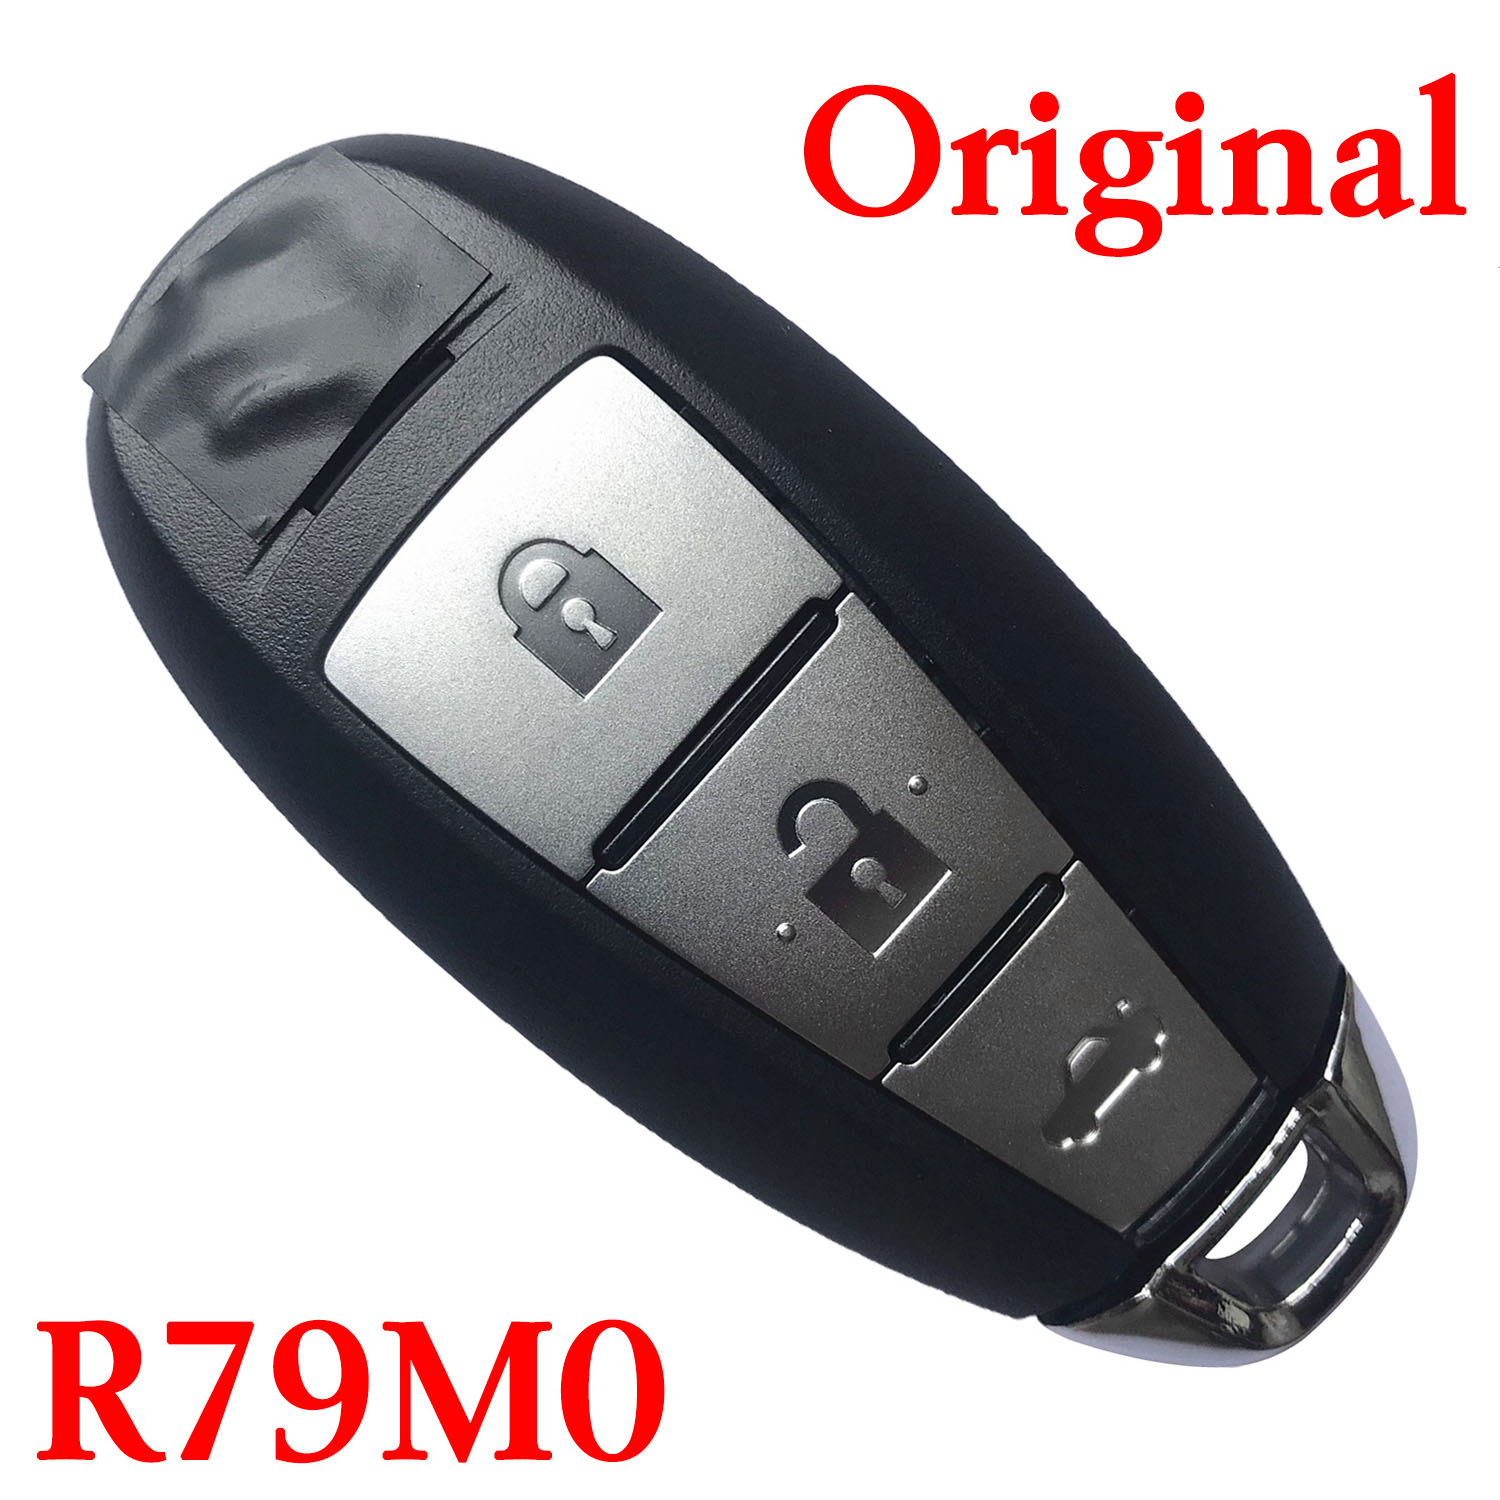 Genuine 3 Buttons 434 MHz Smart Proximity Key for Suzuki Kizashi - CMIIT ID: 2013DJ1474 R79M0